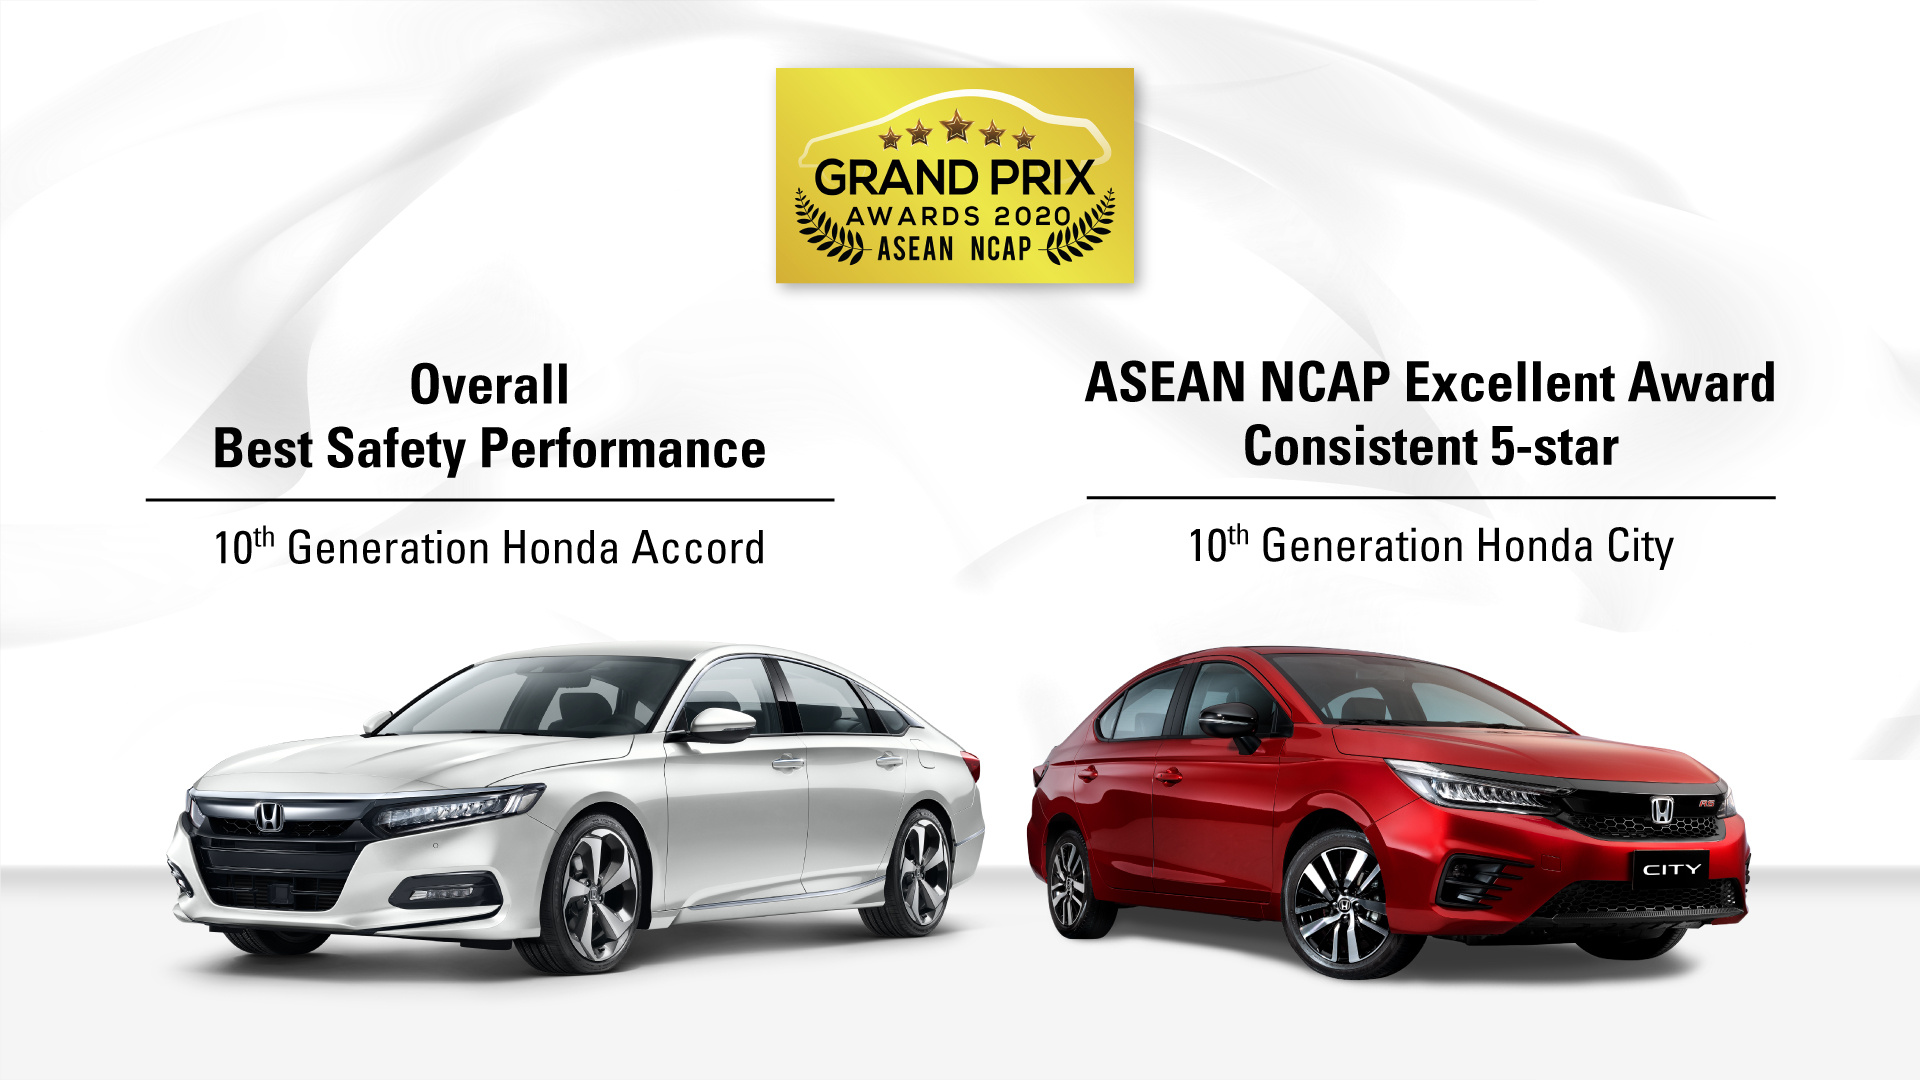 Honda Accord và City ‘bội thu’ giải thưởng an toàn của ASEAN NCAP honda-accord-city-asean-ncap-grand-prix-awards-2020-1613475195.jpg